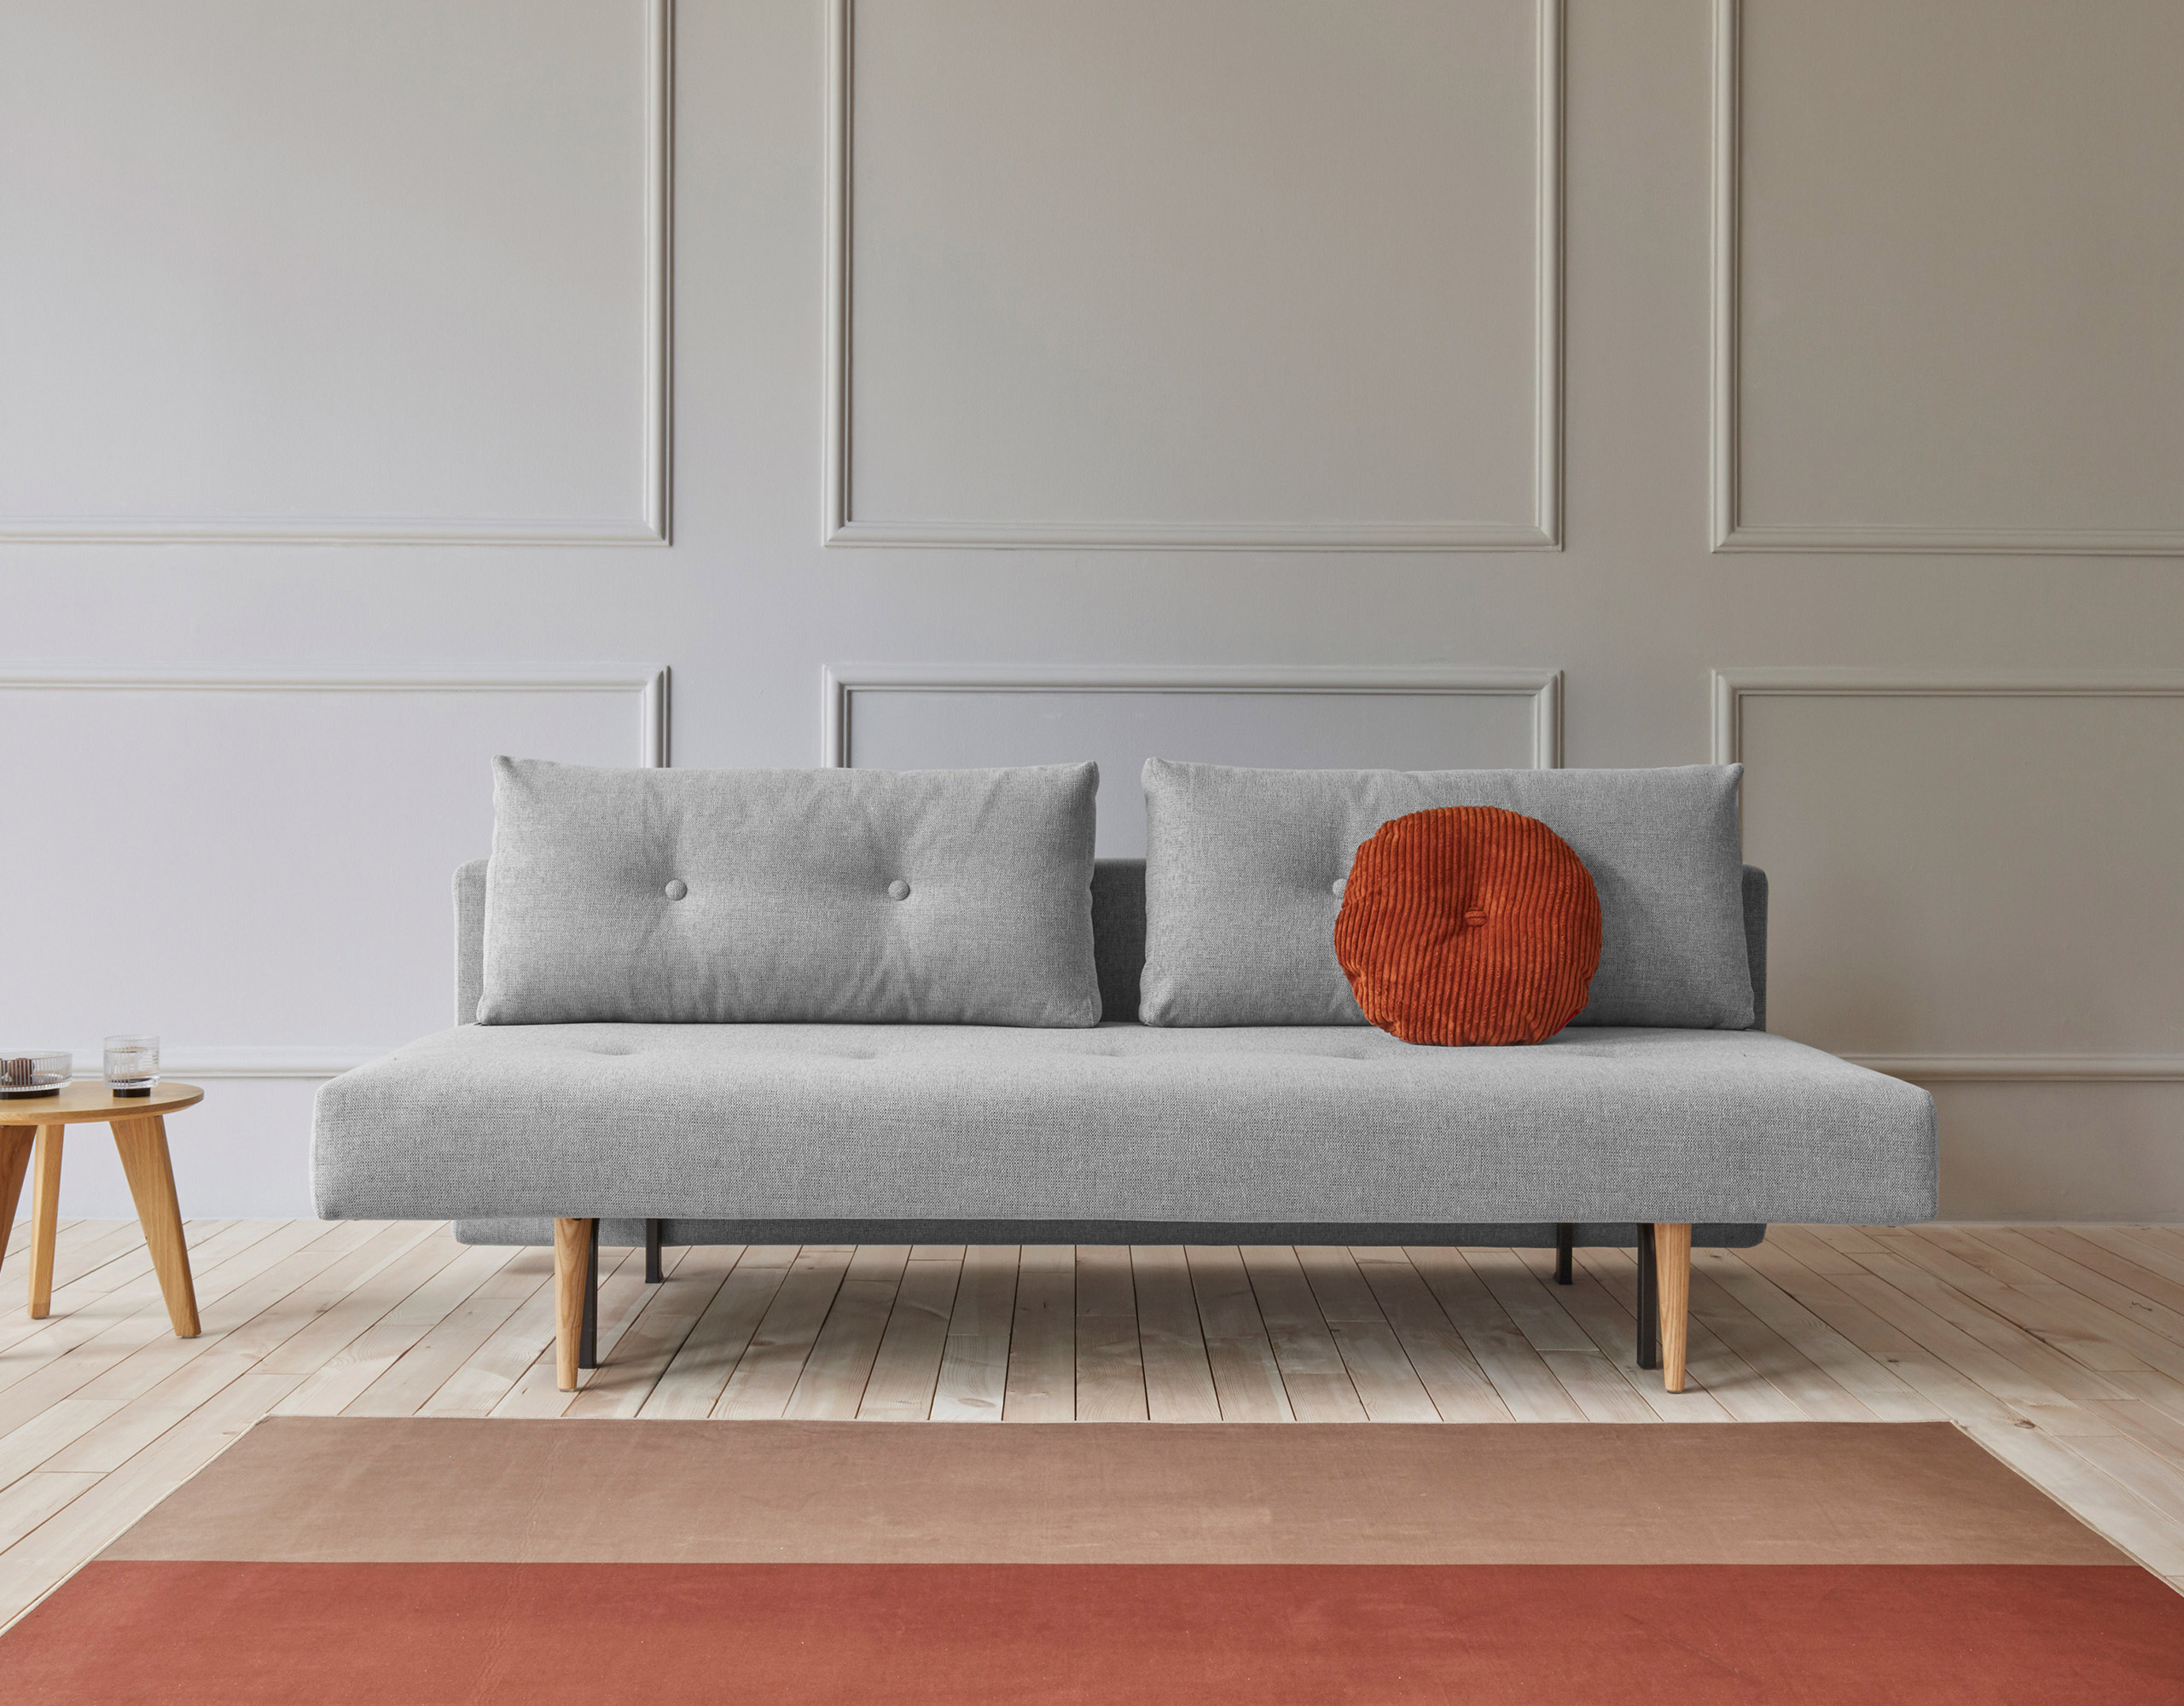 Recast Plus Sofa featuring simple design and comfort.